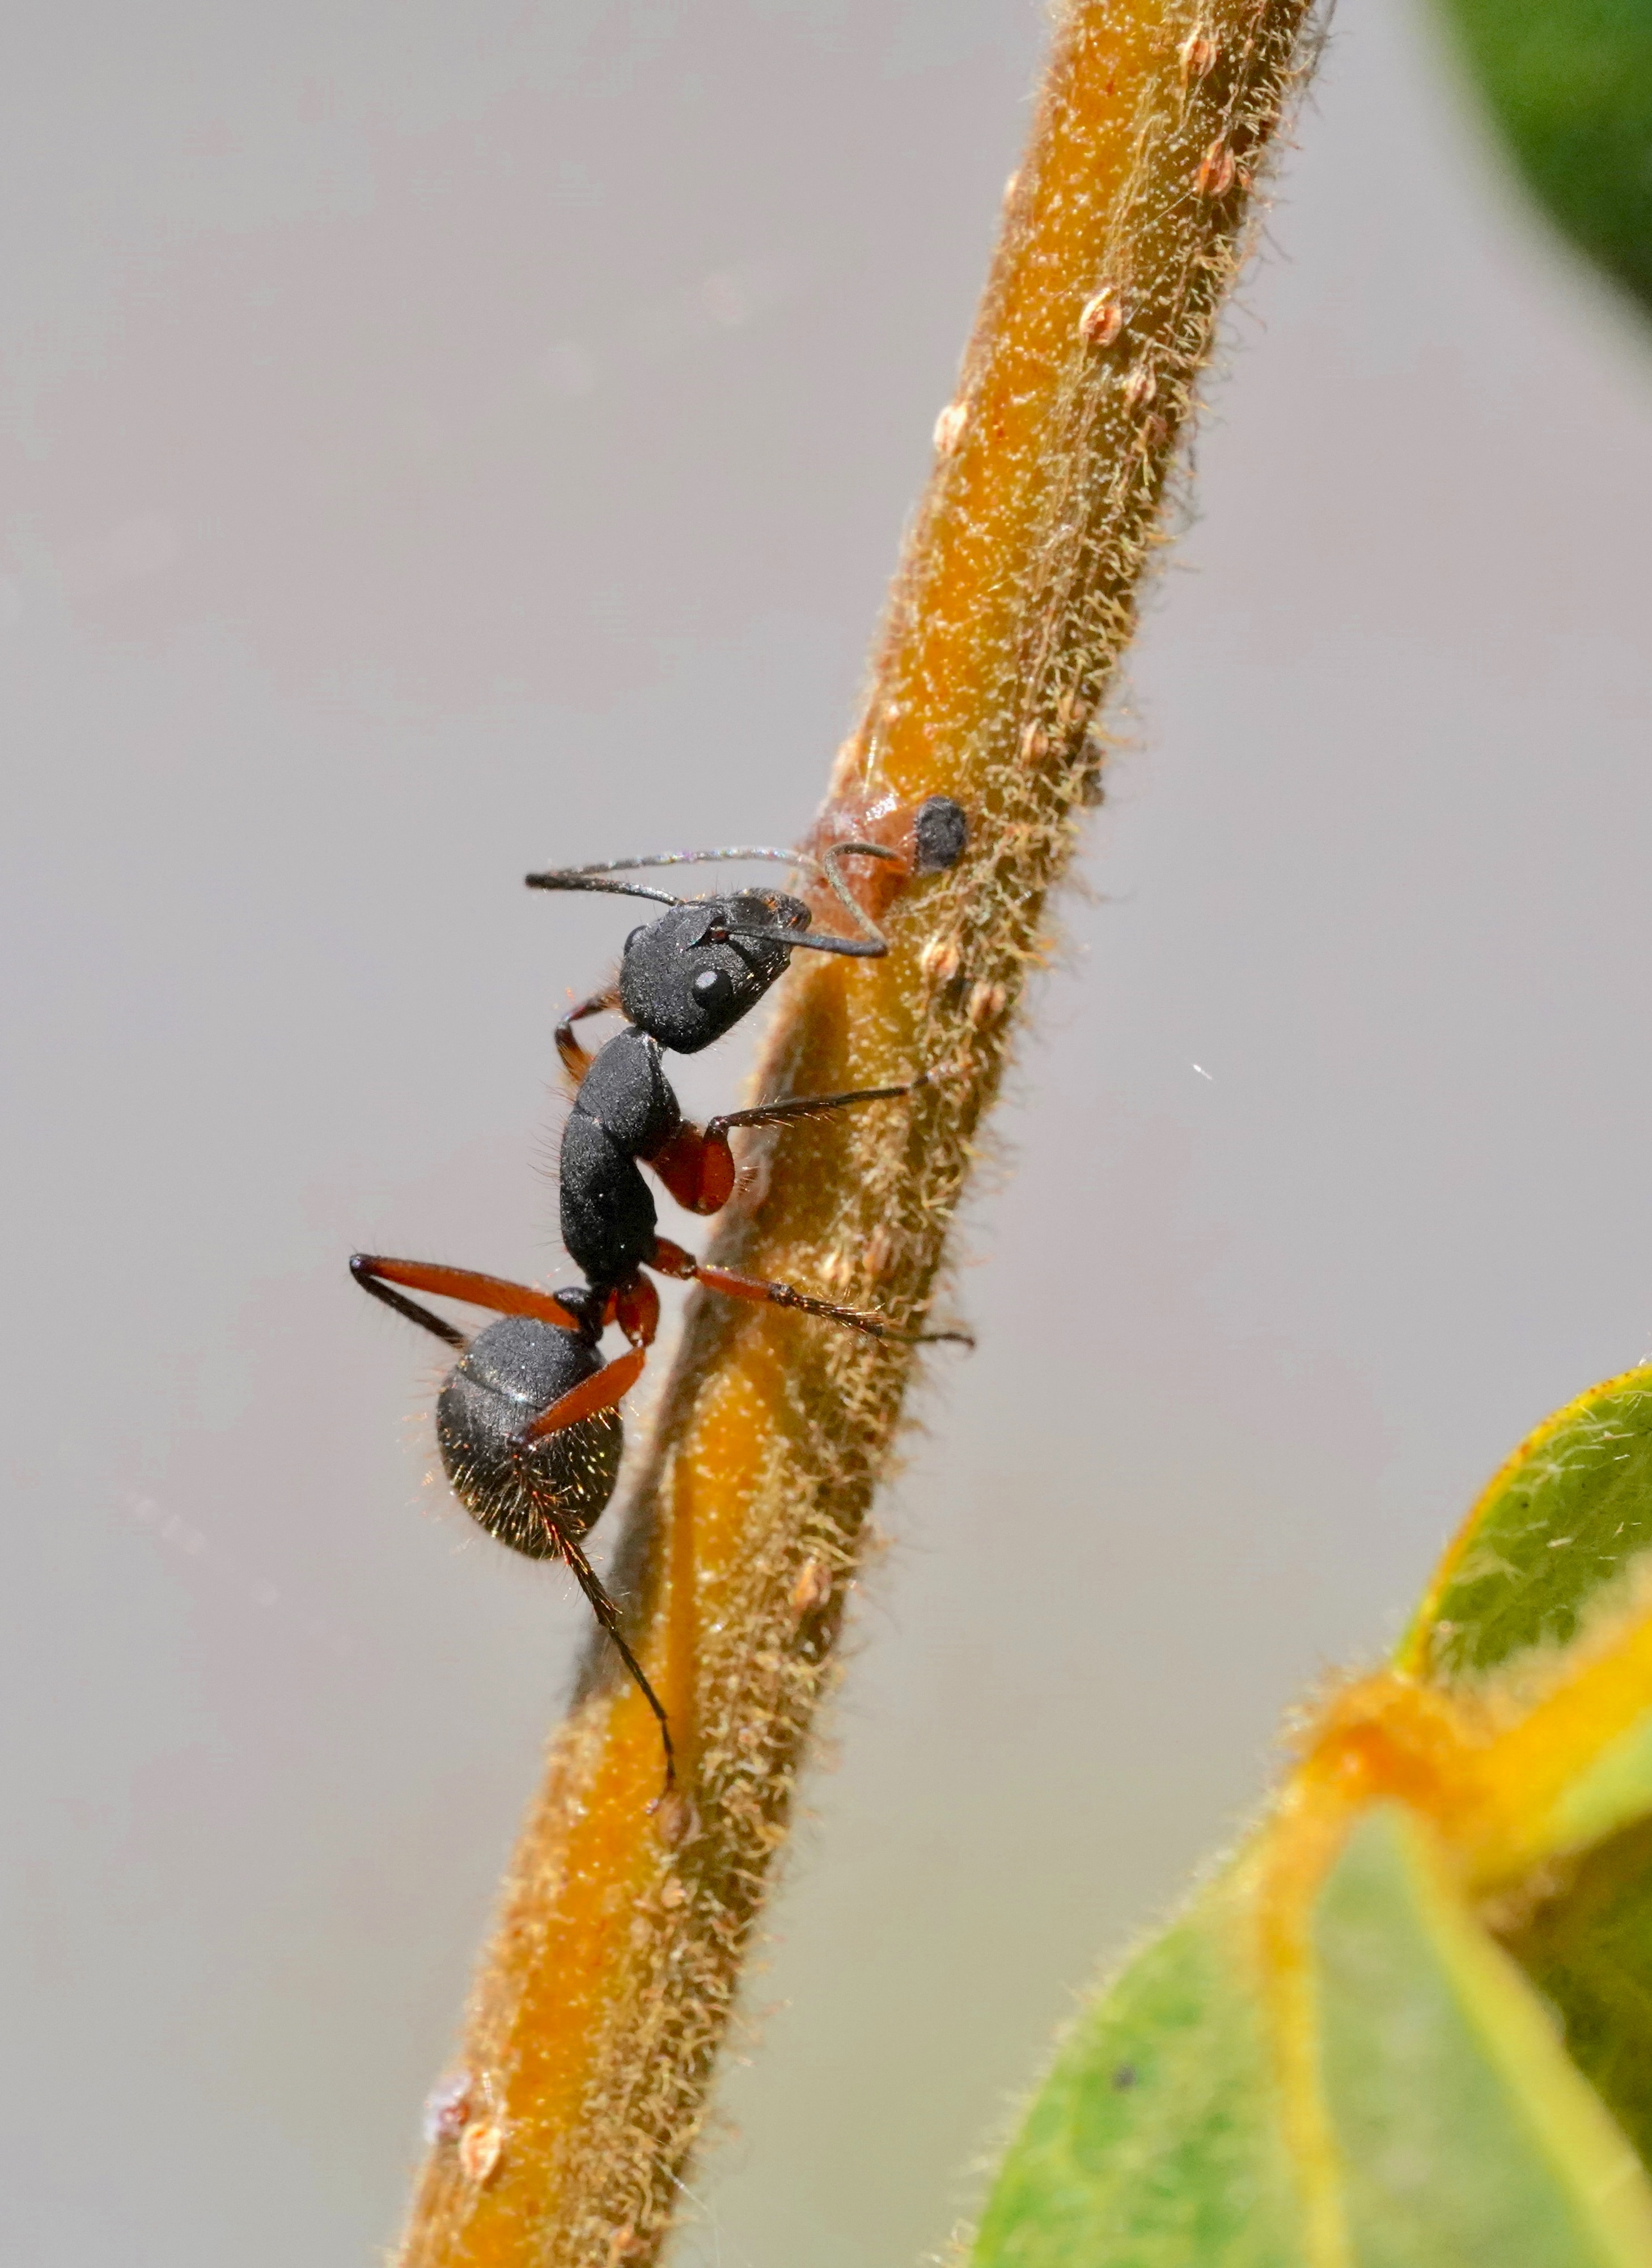 photograph of an ant climbing a blade of grass